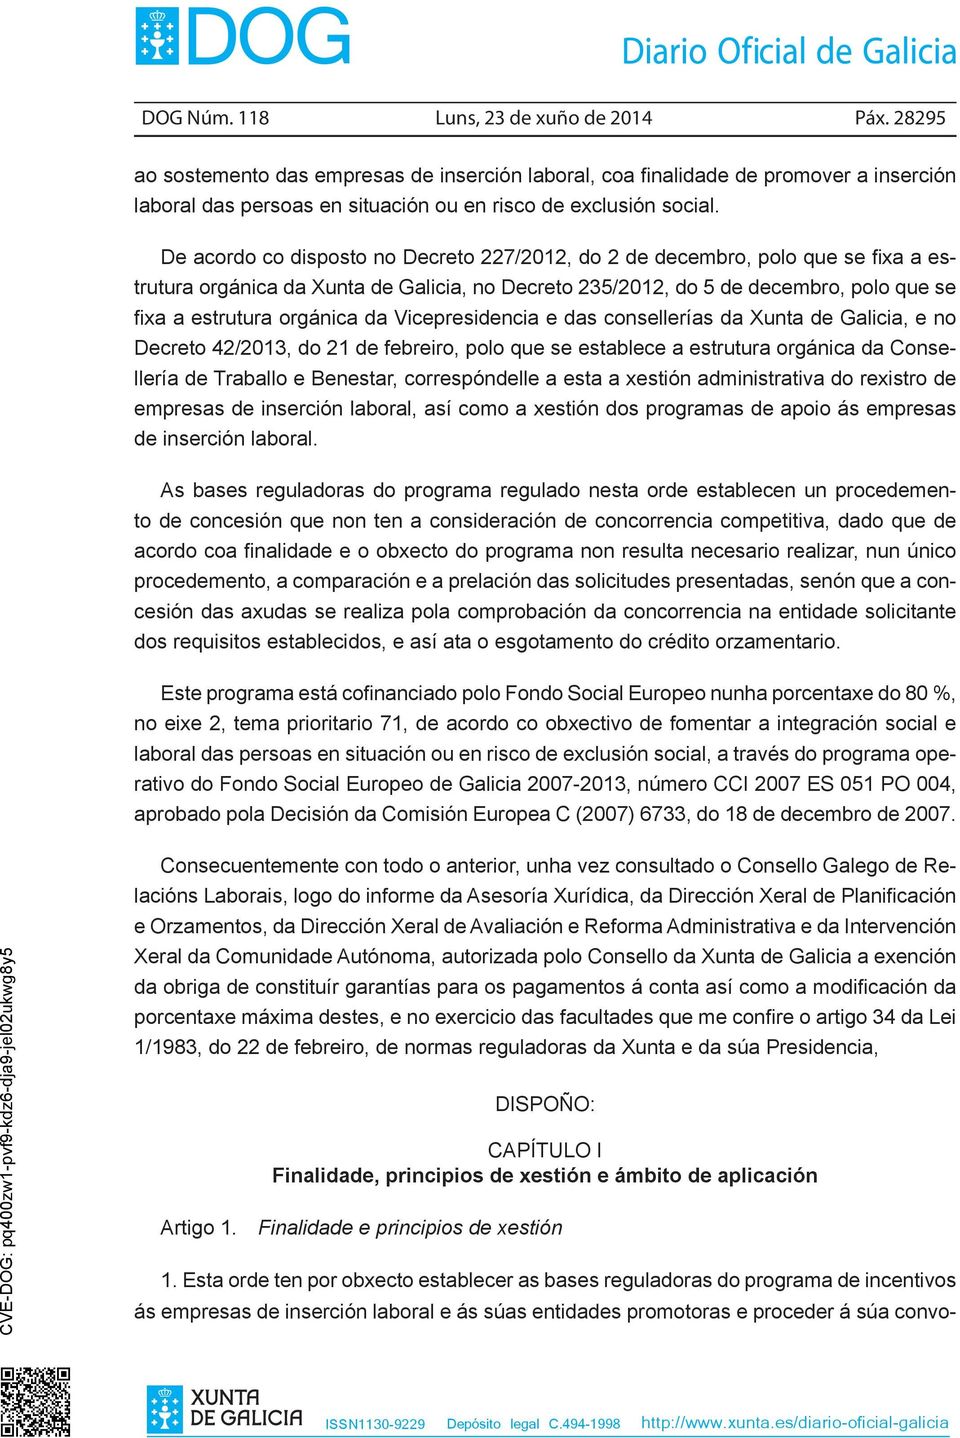 De acordo co disposto no Decreto 227/2012, do 2 de decembro, polo que se fixa a estrutura orgánica da Xunta de Galicia, no Decreto 235/2012, do 5 de decembro, polo que se fixa a estrutura orgánica da